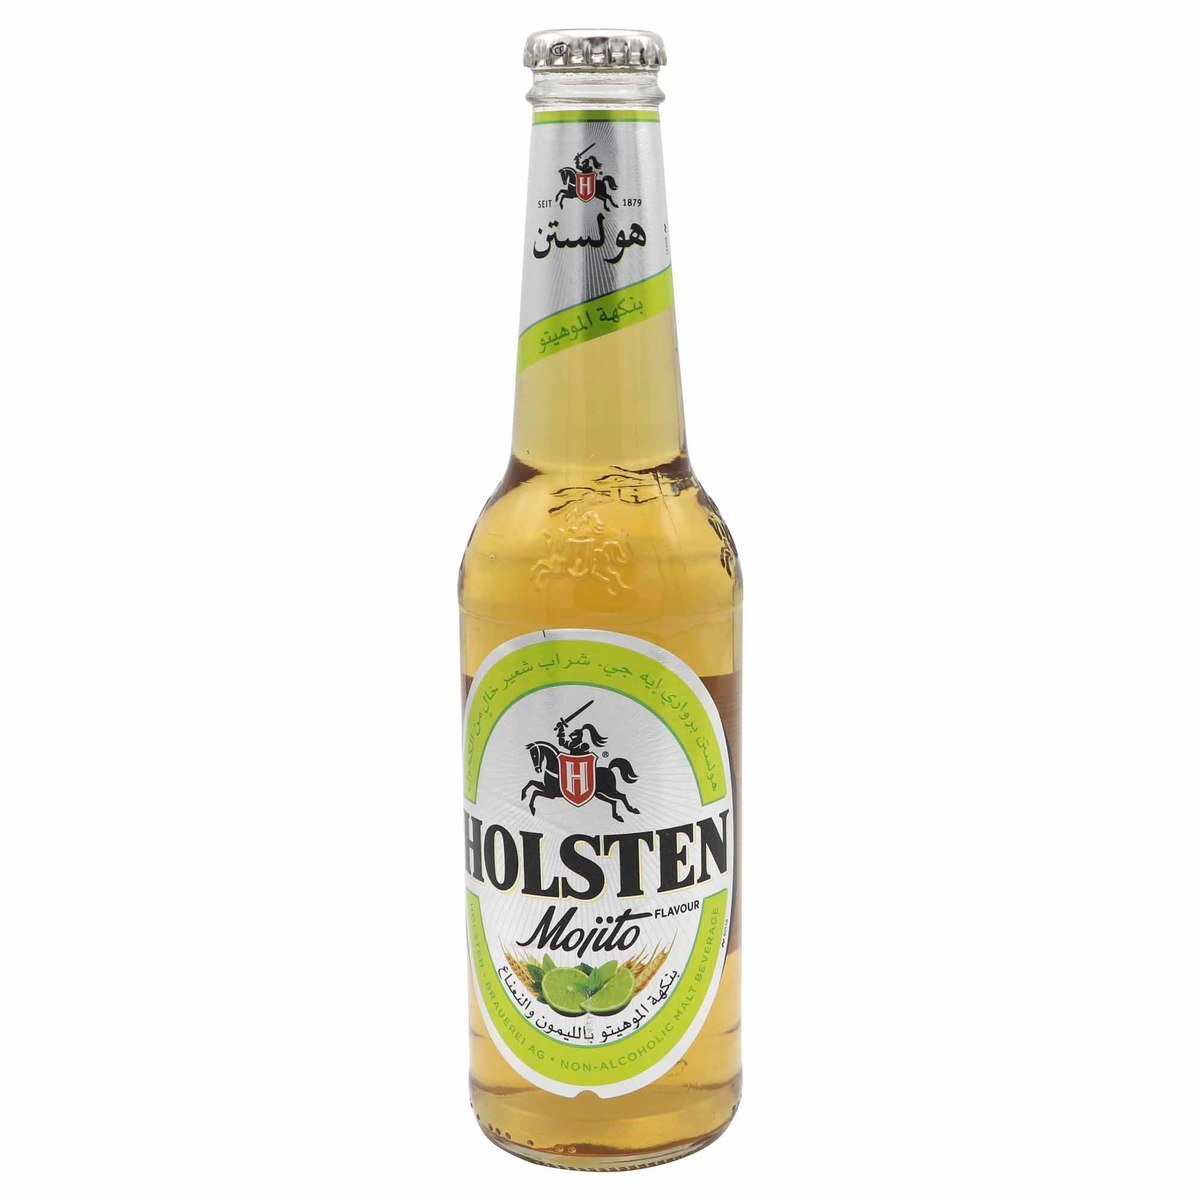 هولستن موهيتو مشروب شعير غير كحولي 330 مل × 6